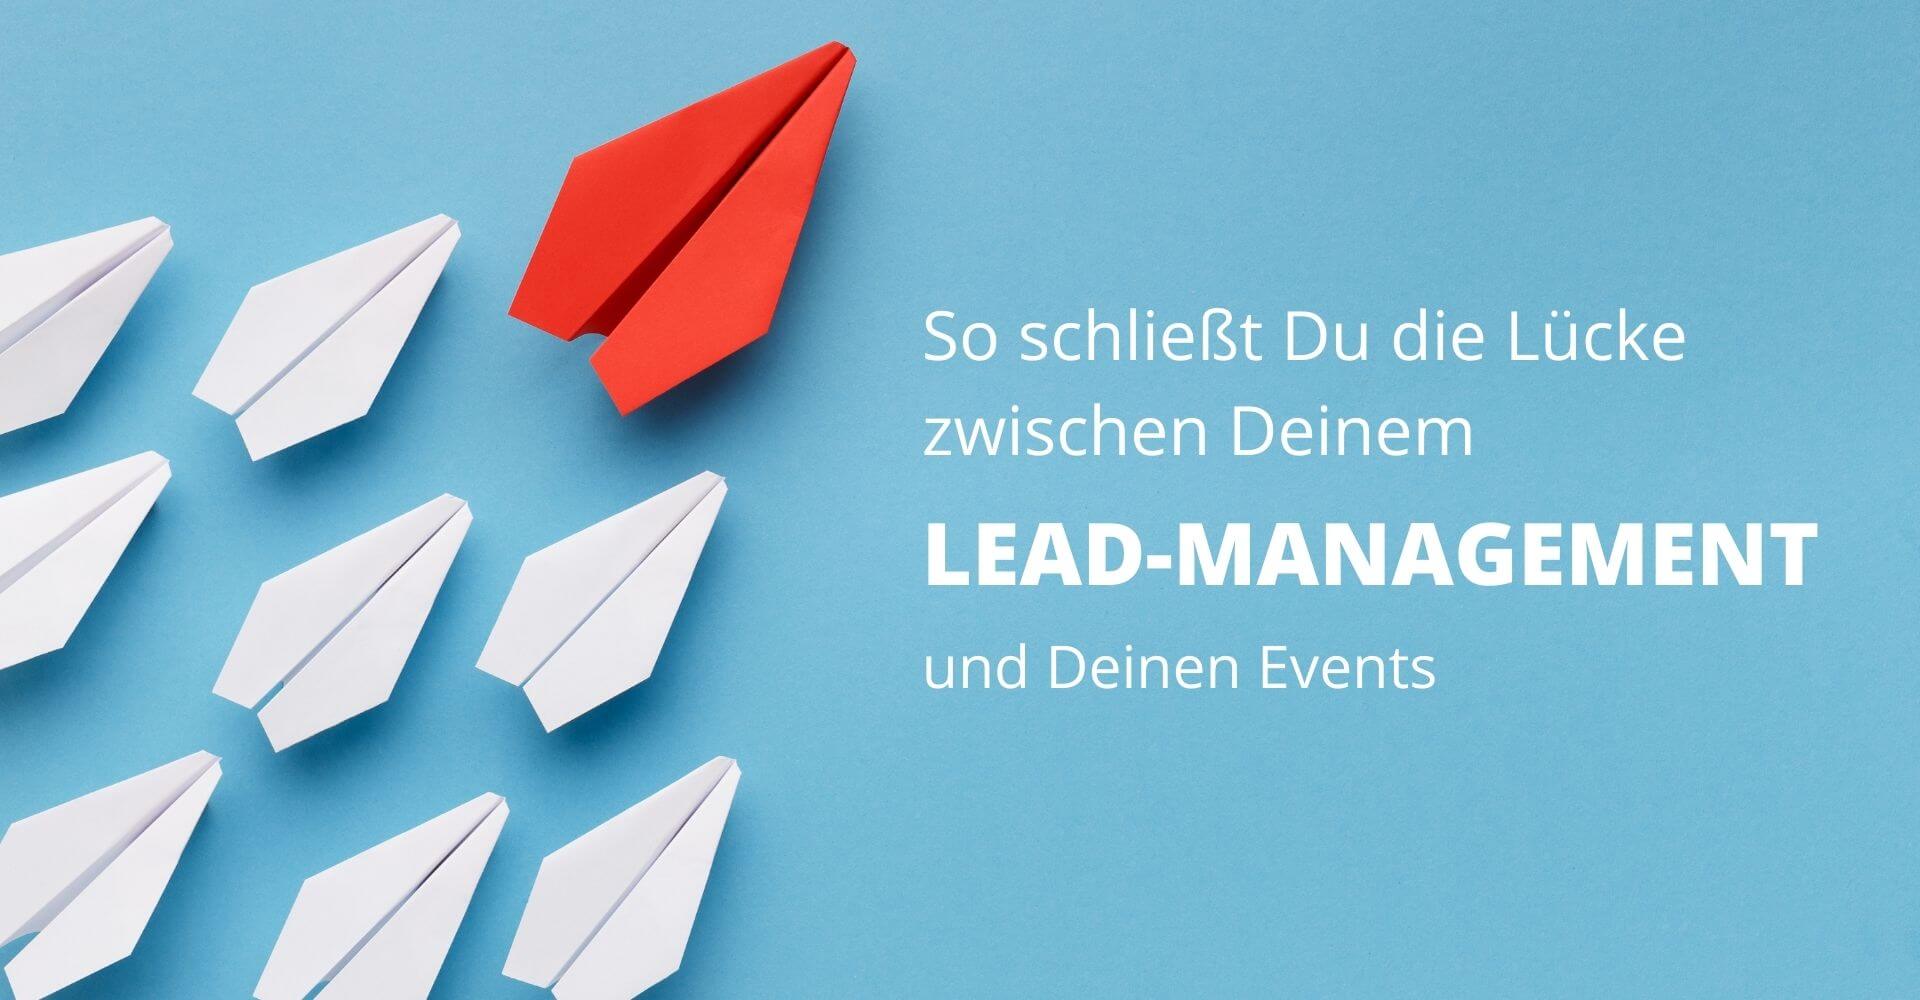 Leadmanagement mit Marketing-Automation und Event-Daten